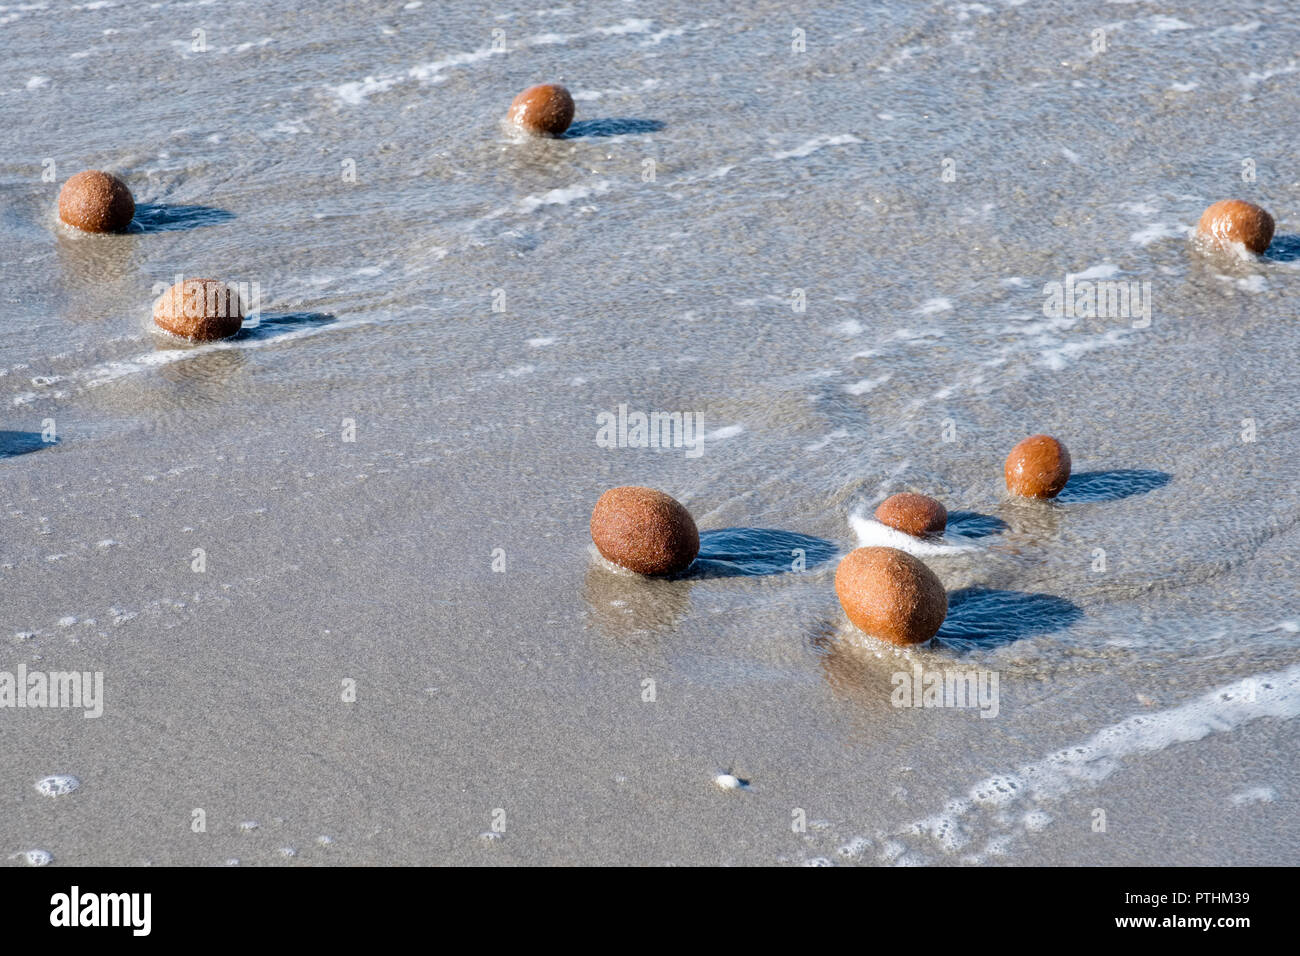 Boules de la mer sur une plage faite de Posidonia oceanica, Neptune Grass Méditerranée Tapeweed egagropili (fibreux), près de Arborea, Sardaigne, Italie Banque D'Images